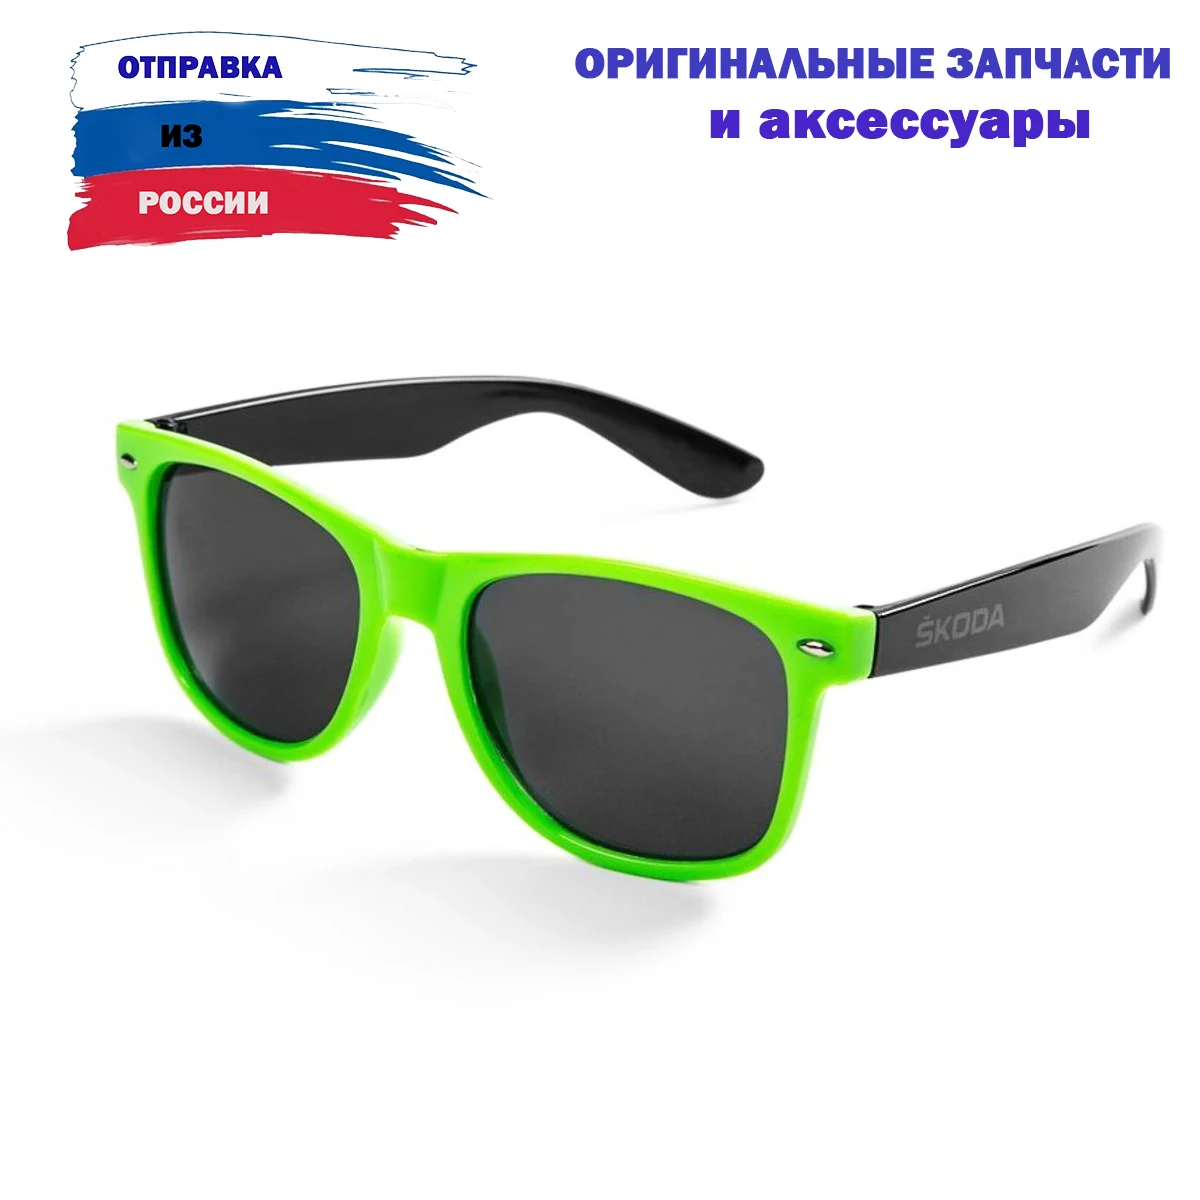 Мужские зеленые очки солнцезащитные. 000087900ac солнцезащитные очки. VAG 60u087900 очки солнцезащитные. Очки с зеленой оправой. Солнечные очки в зеленой оправе.